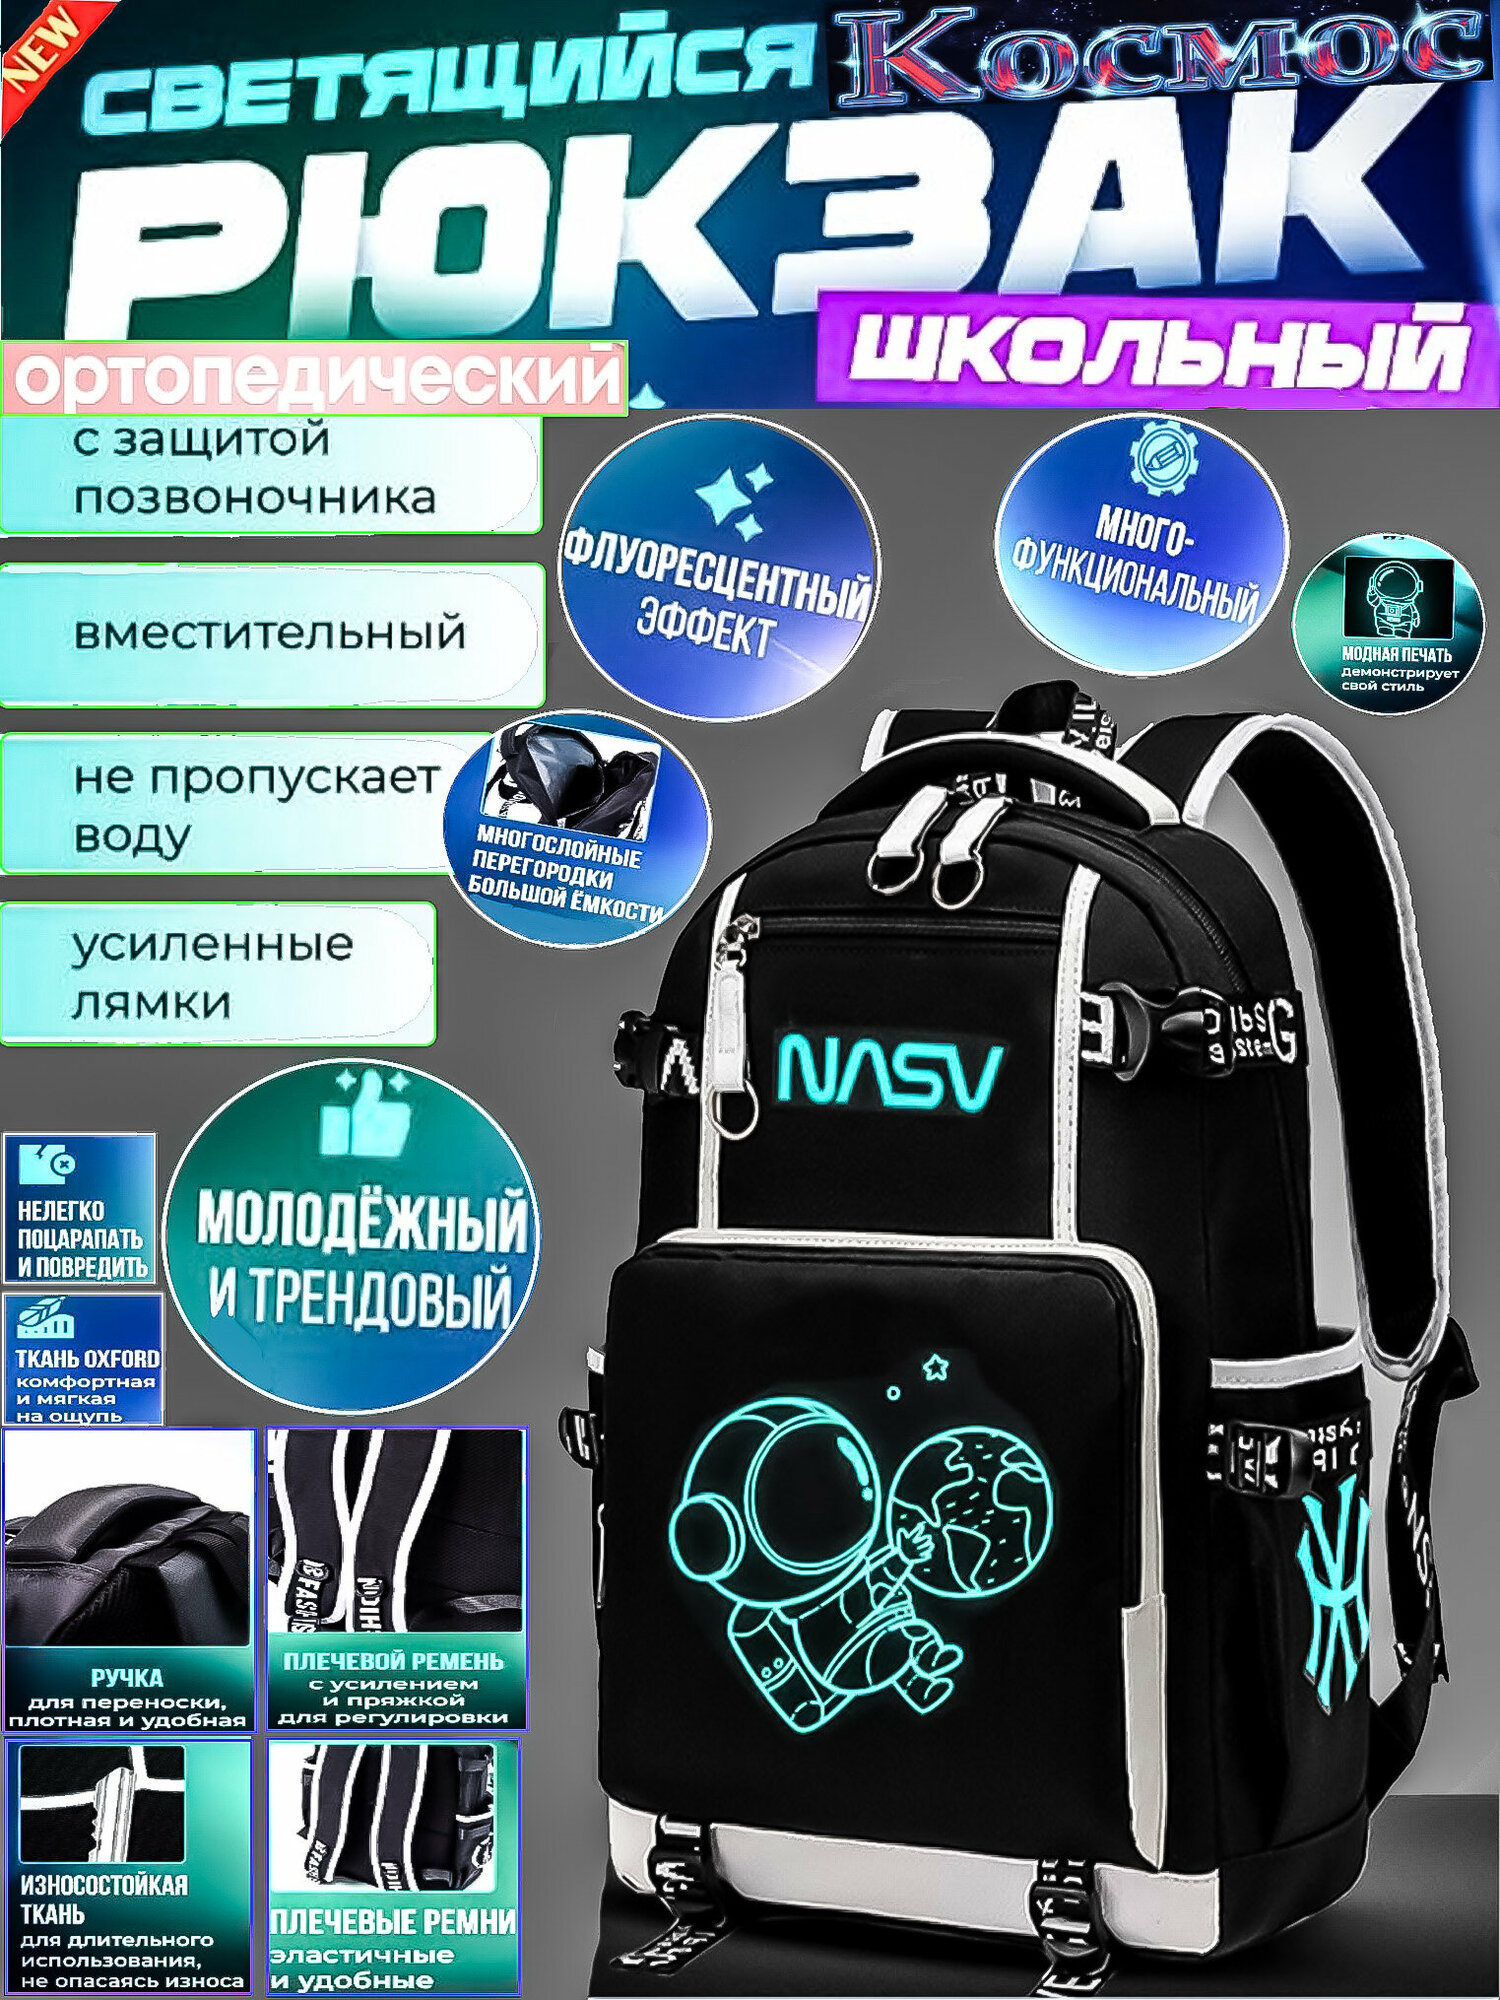 Рюкзак светящийся космос /Модный и стильный ортопедический эргономичный городской спортивный подростковый школьный рюкзак сумка для мальчика и девочки